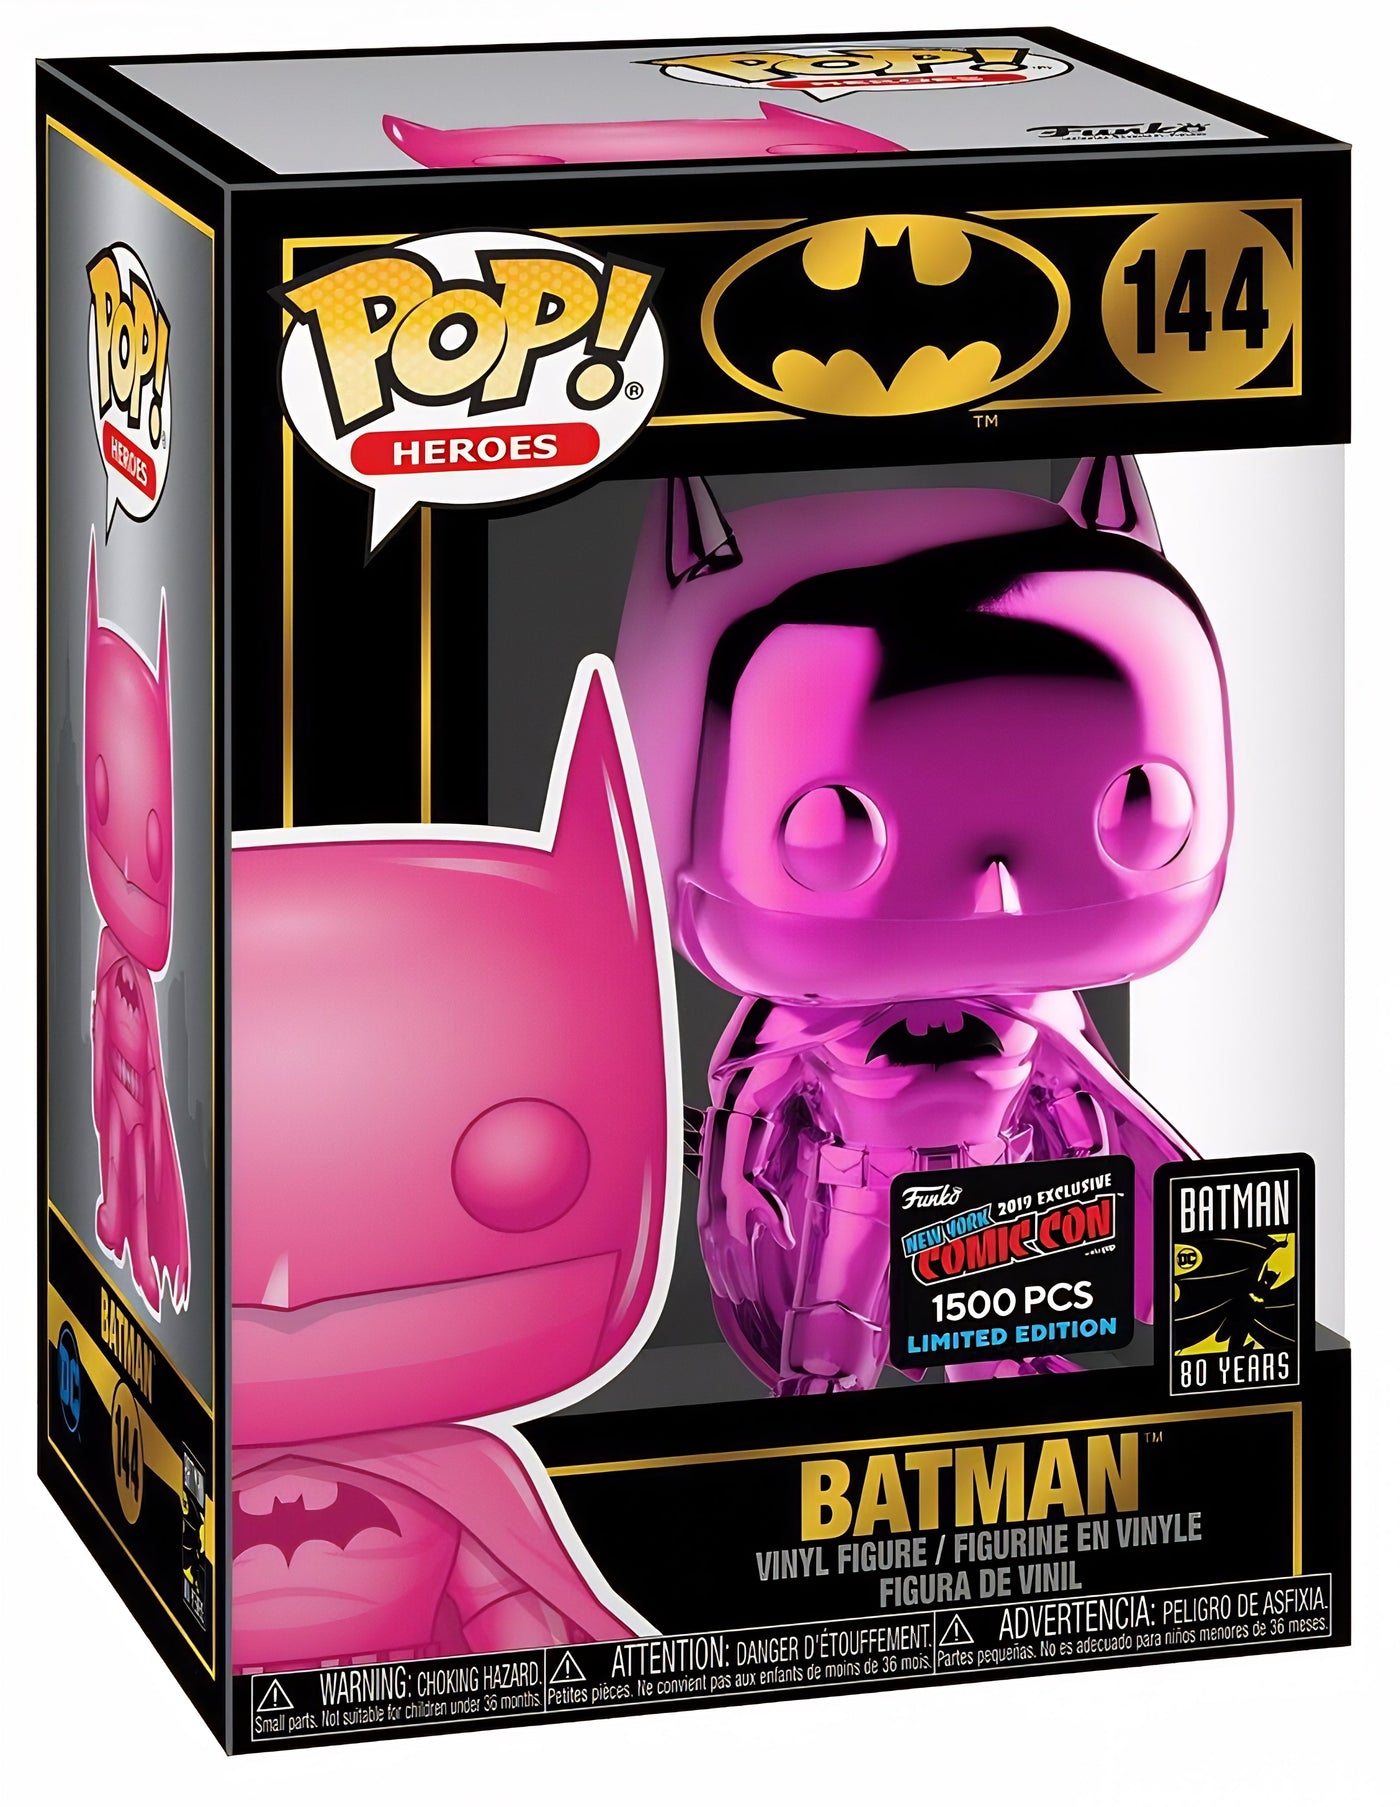 POP! Heroes: 144 DCSH, Batman (Pink CRM) (1,500 PCS) Exclusive